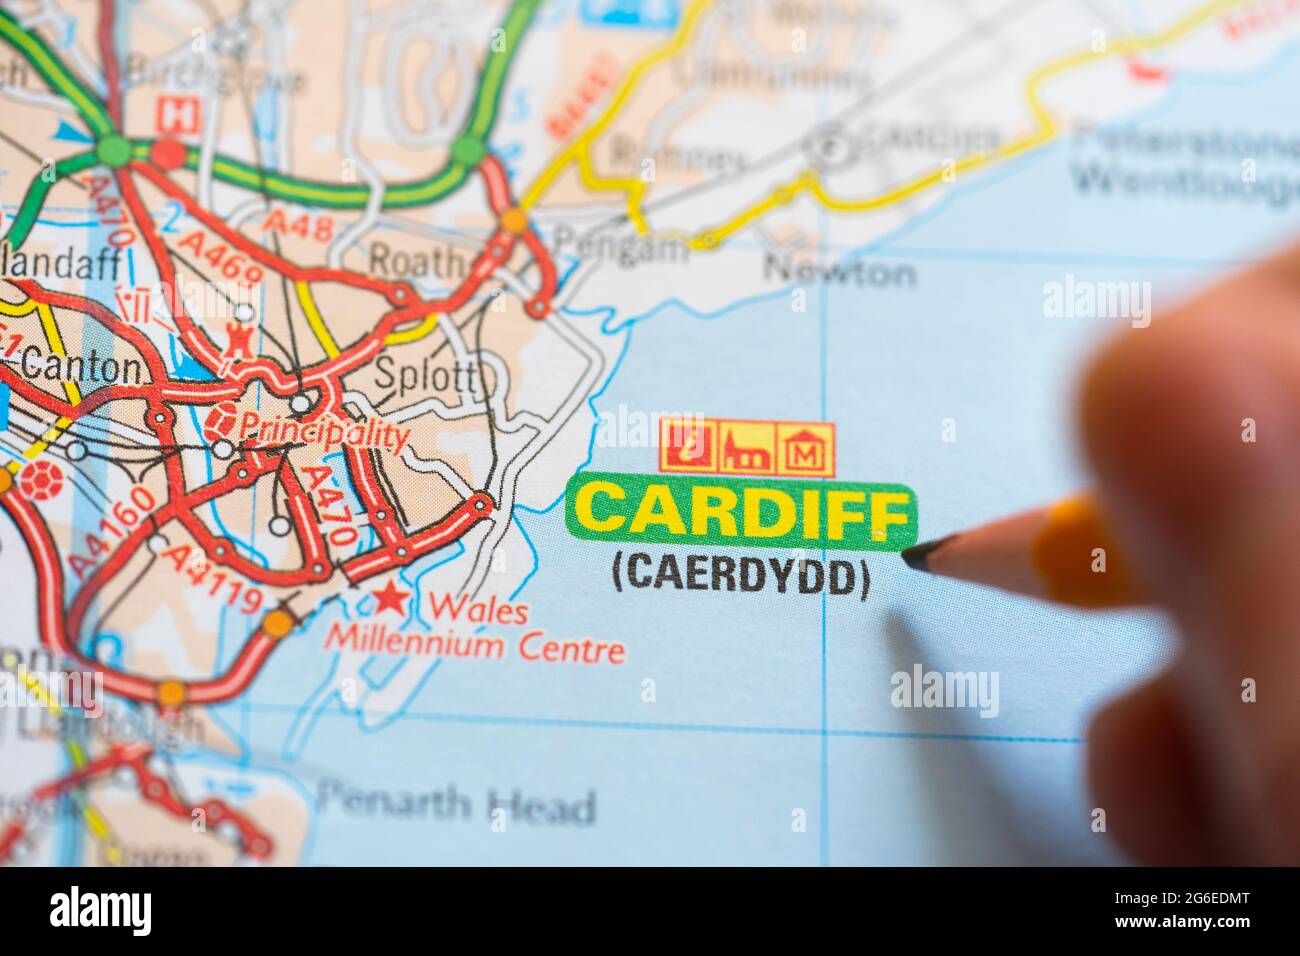 Primo piano di una pagina in una carta stampata atlante con una mano dell'uomo che tiene una matita che punta alla capitale del Galles - Cardiff (Caerdydd) Foto Stock